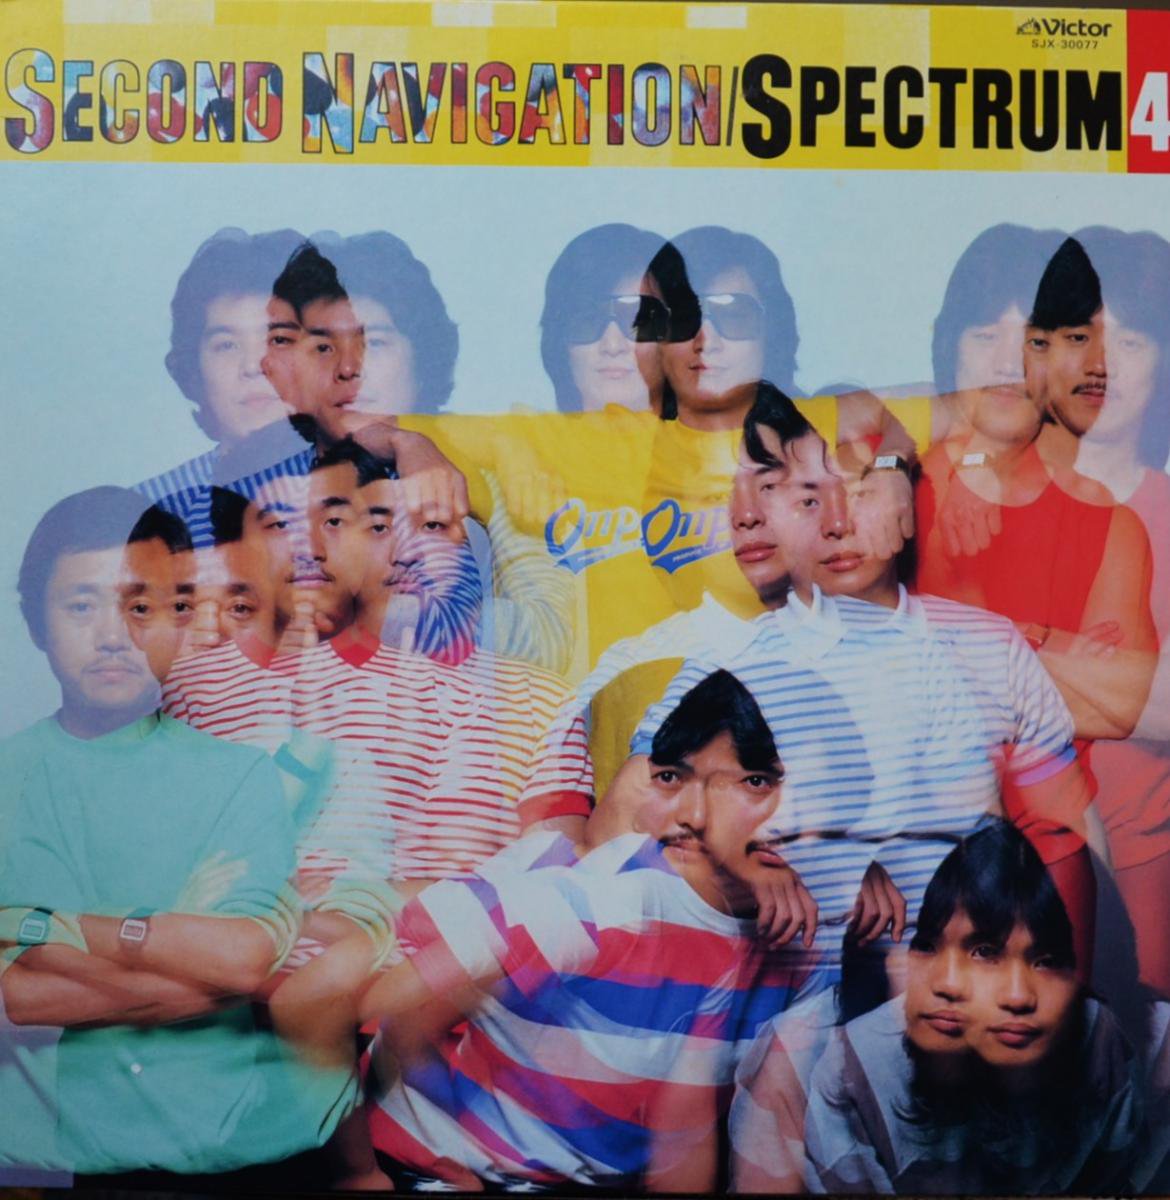 スペクトラム SPECTRUM / セカンド・ナビゲーション SECOND NAVIGATION (SPECTRUM 4) (LP)